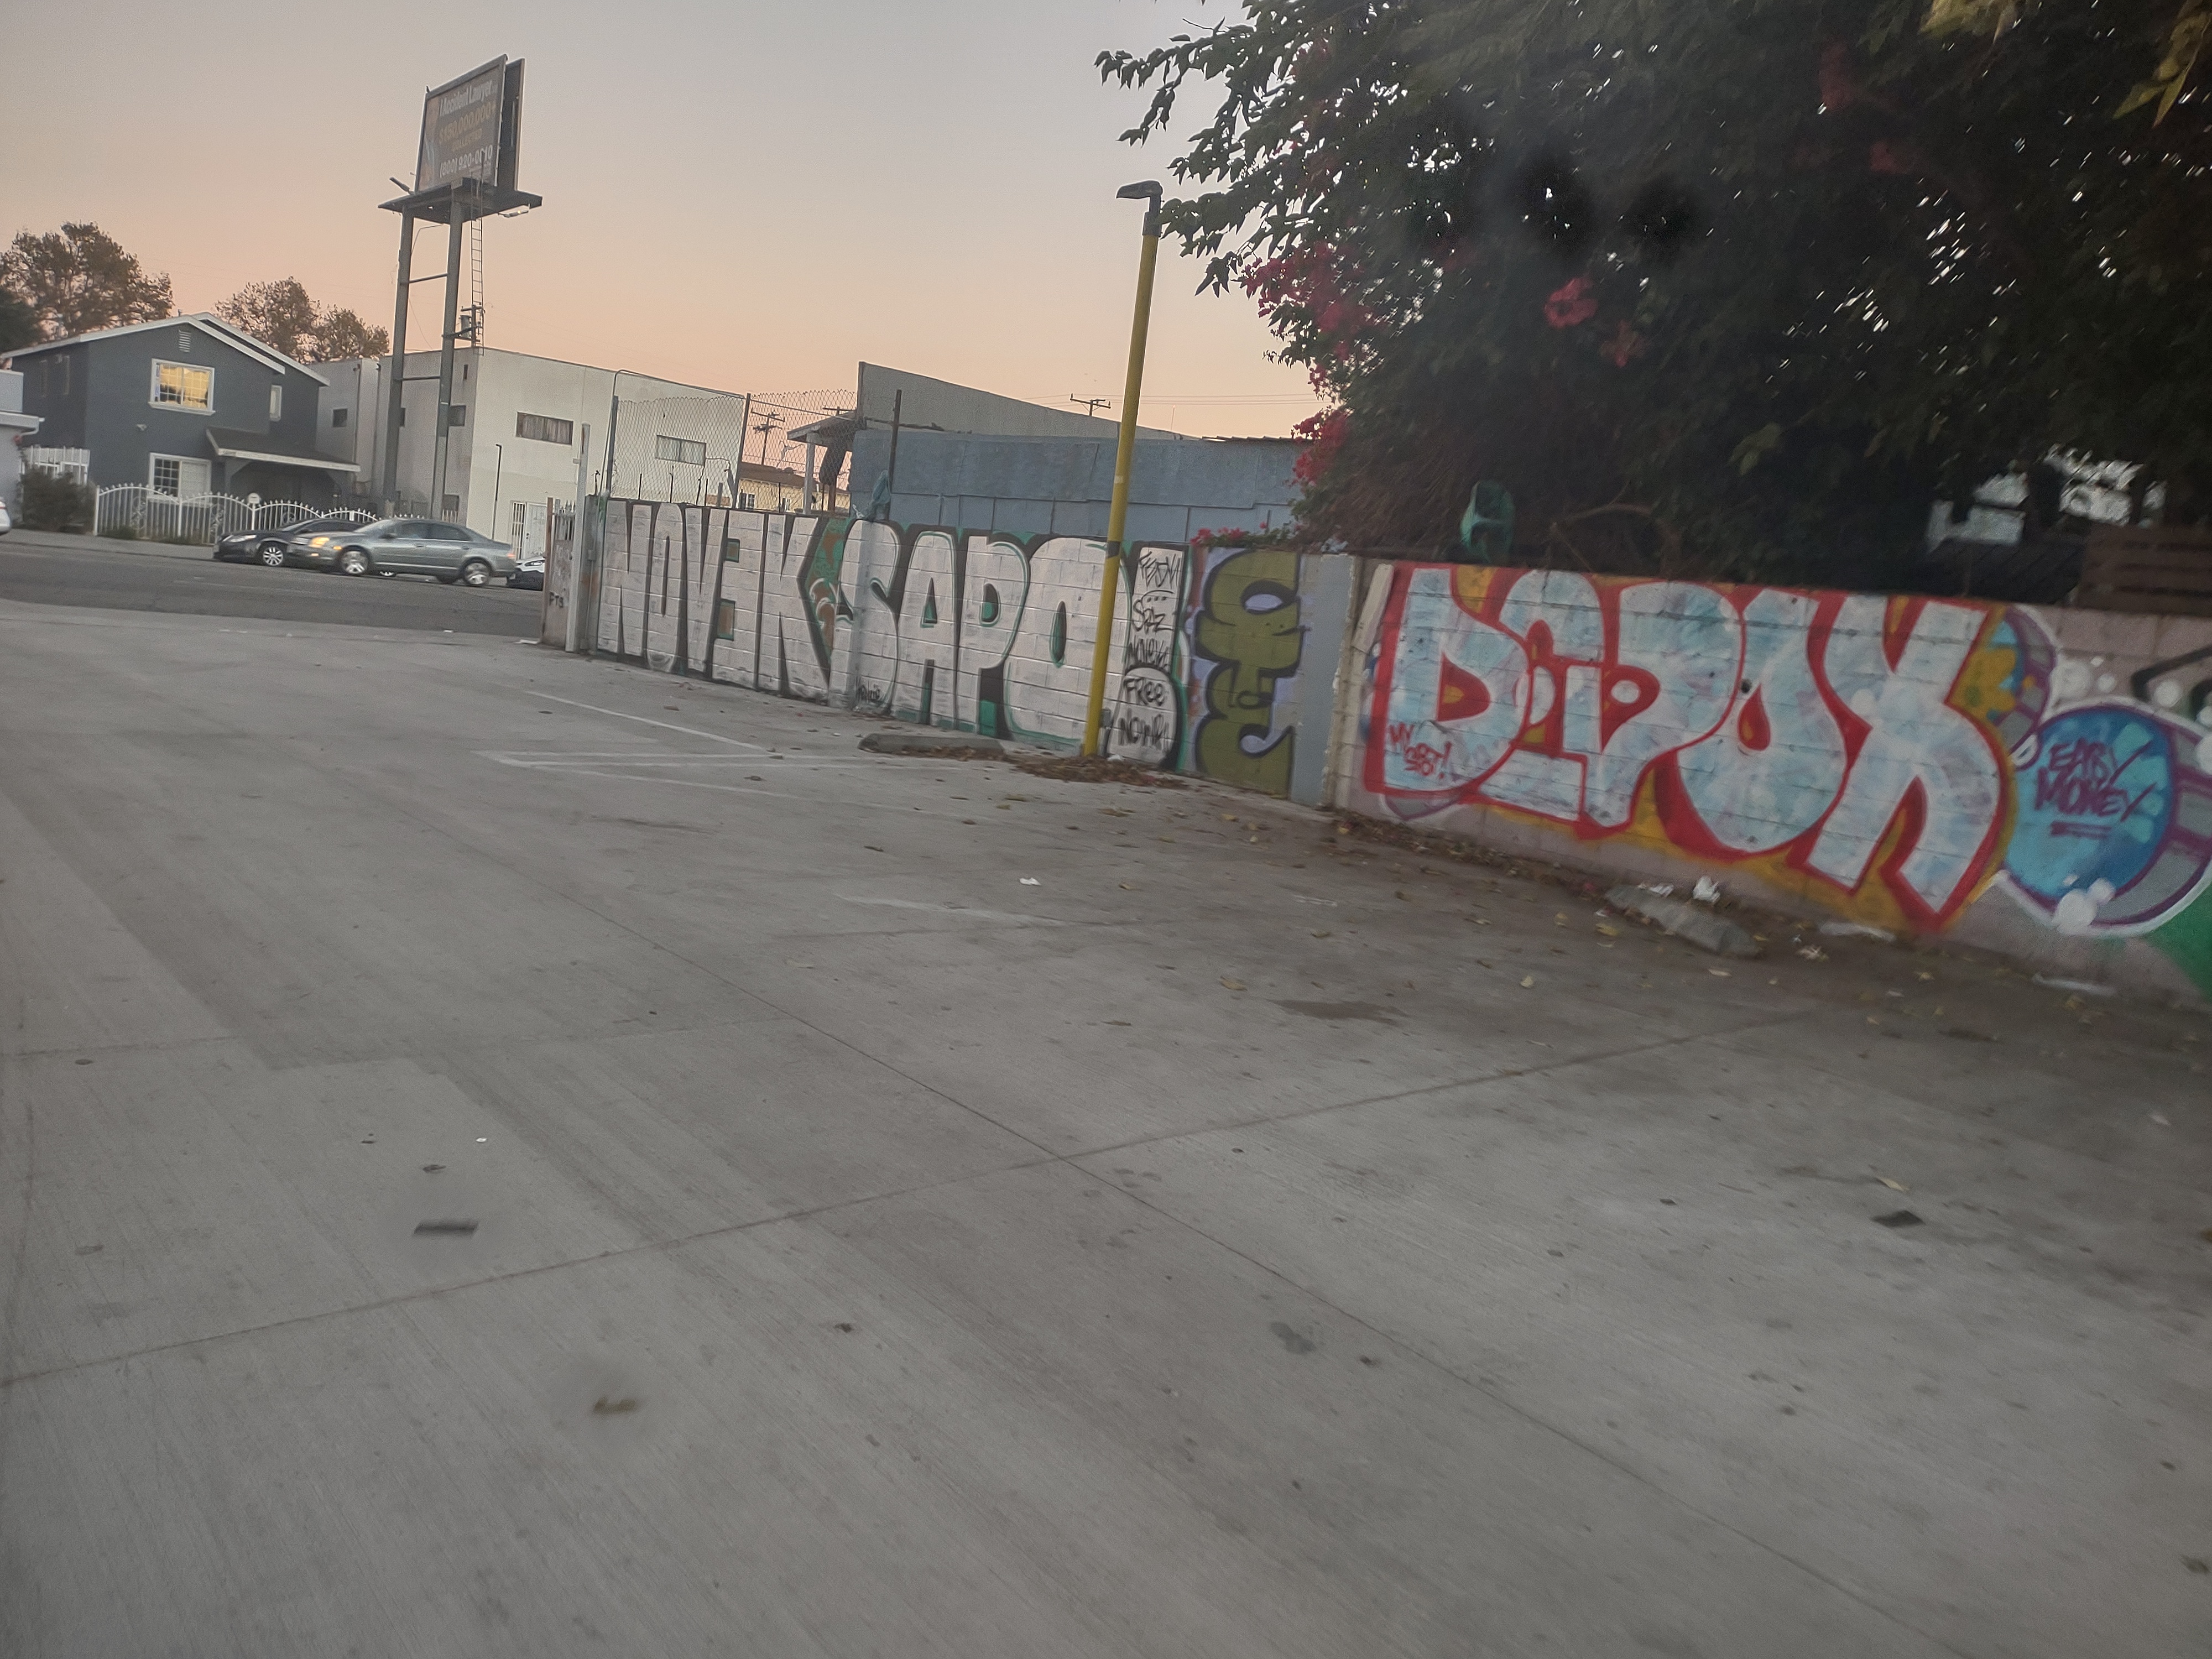 Compton c.a. ( graffiti murals ) Img_1121